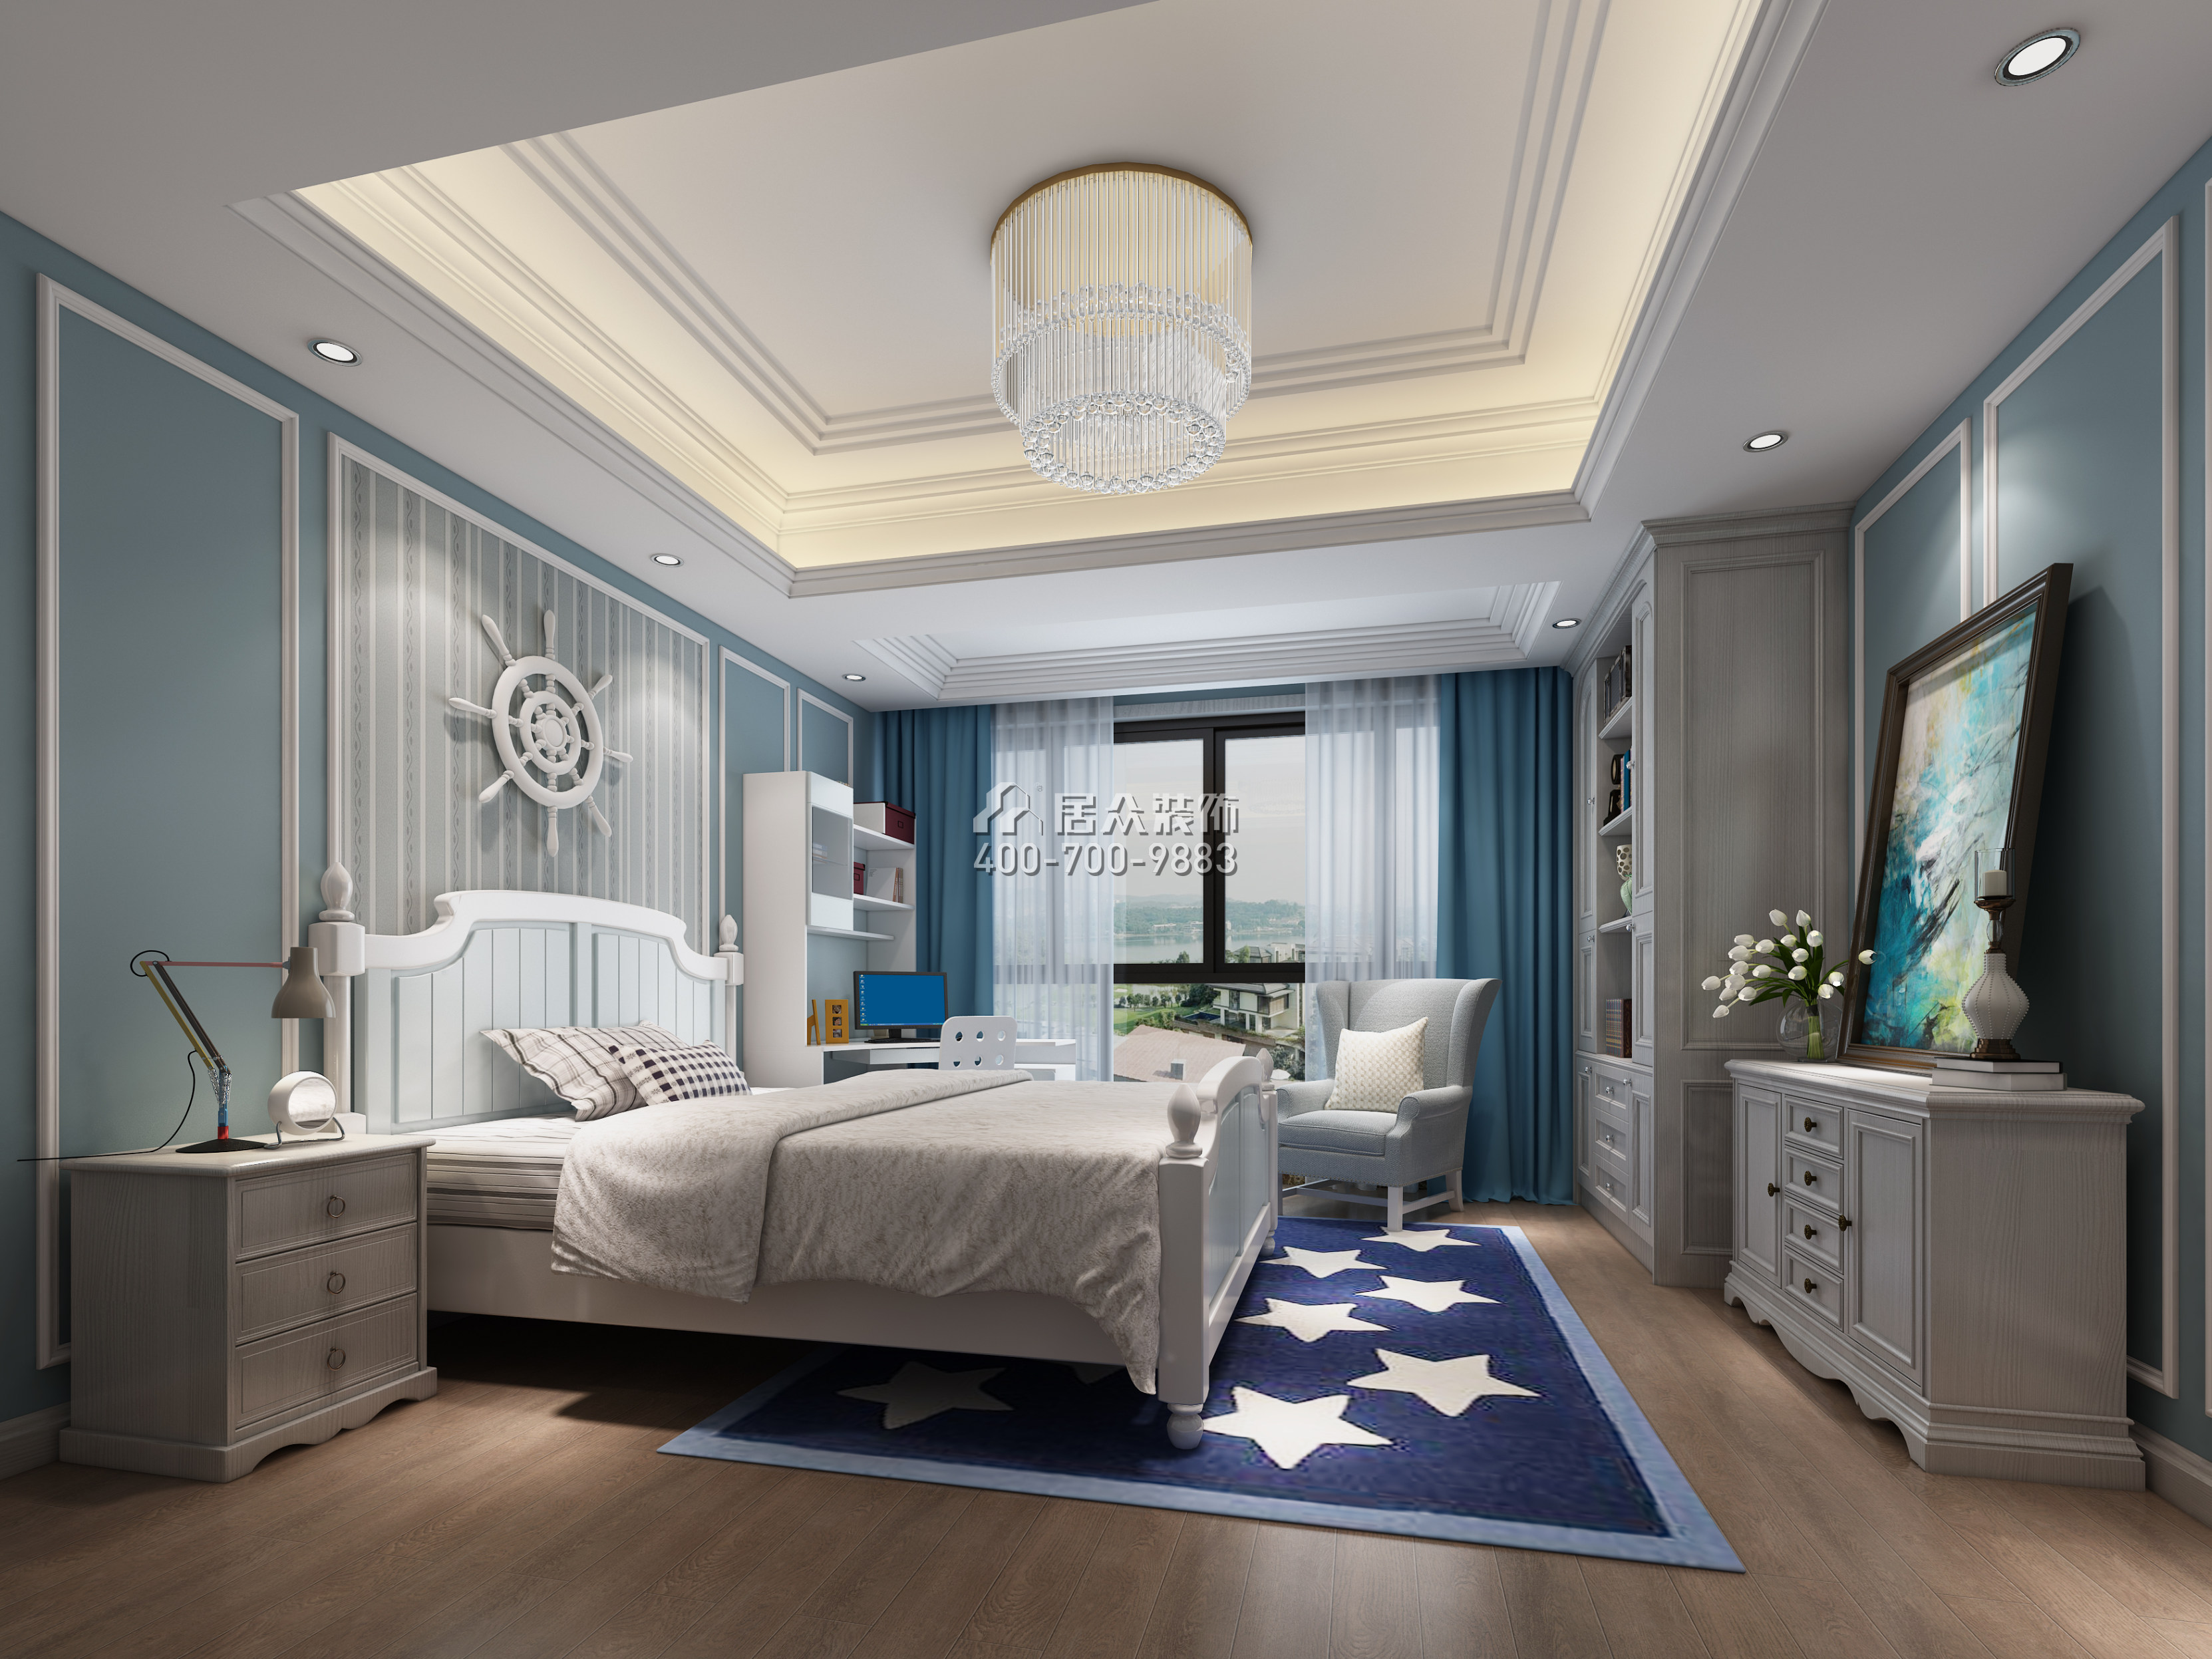 全盛紫悦龙庭165平方米美式风格复式户型卧室装修效果图